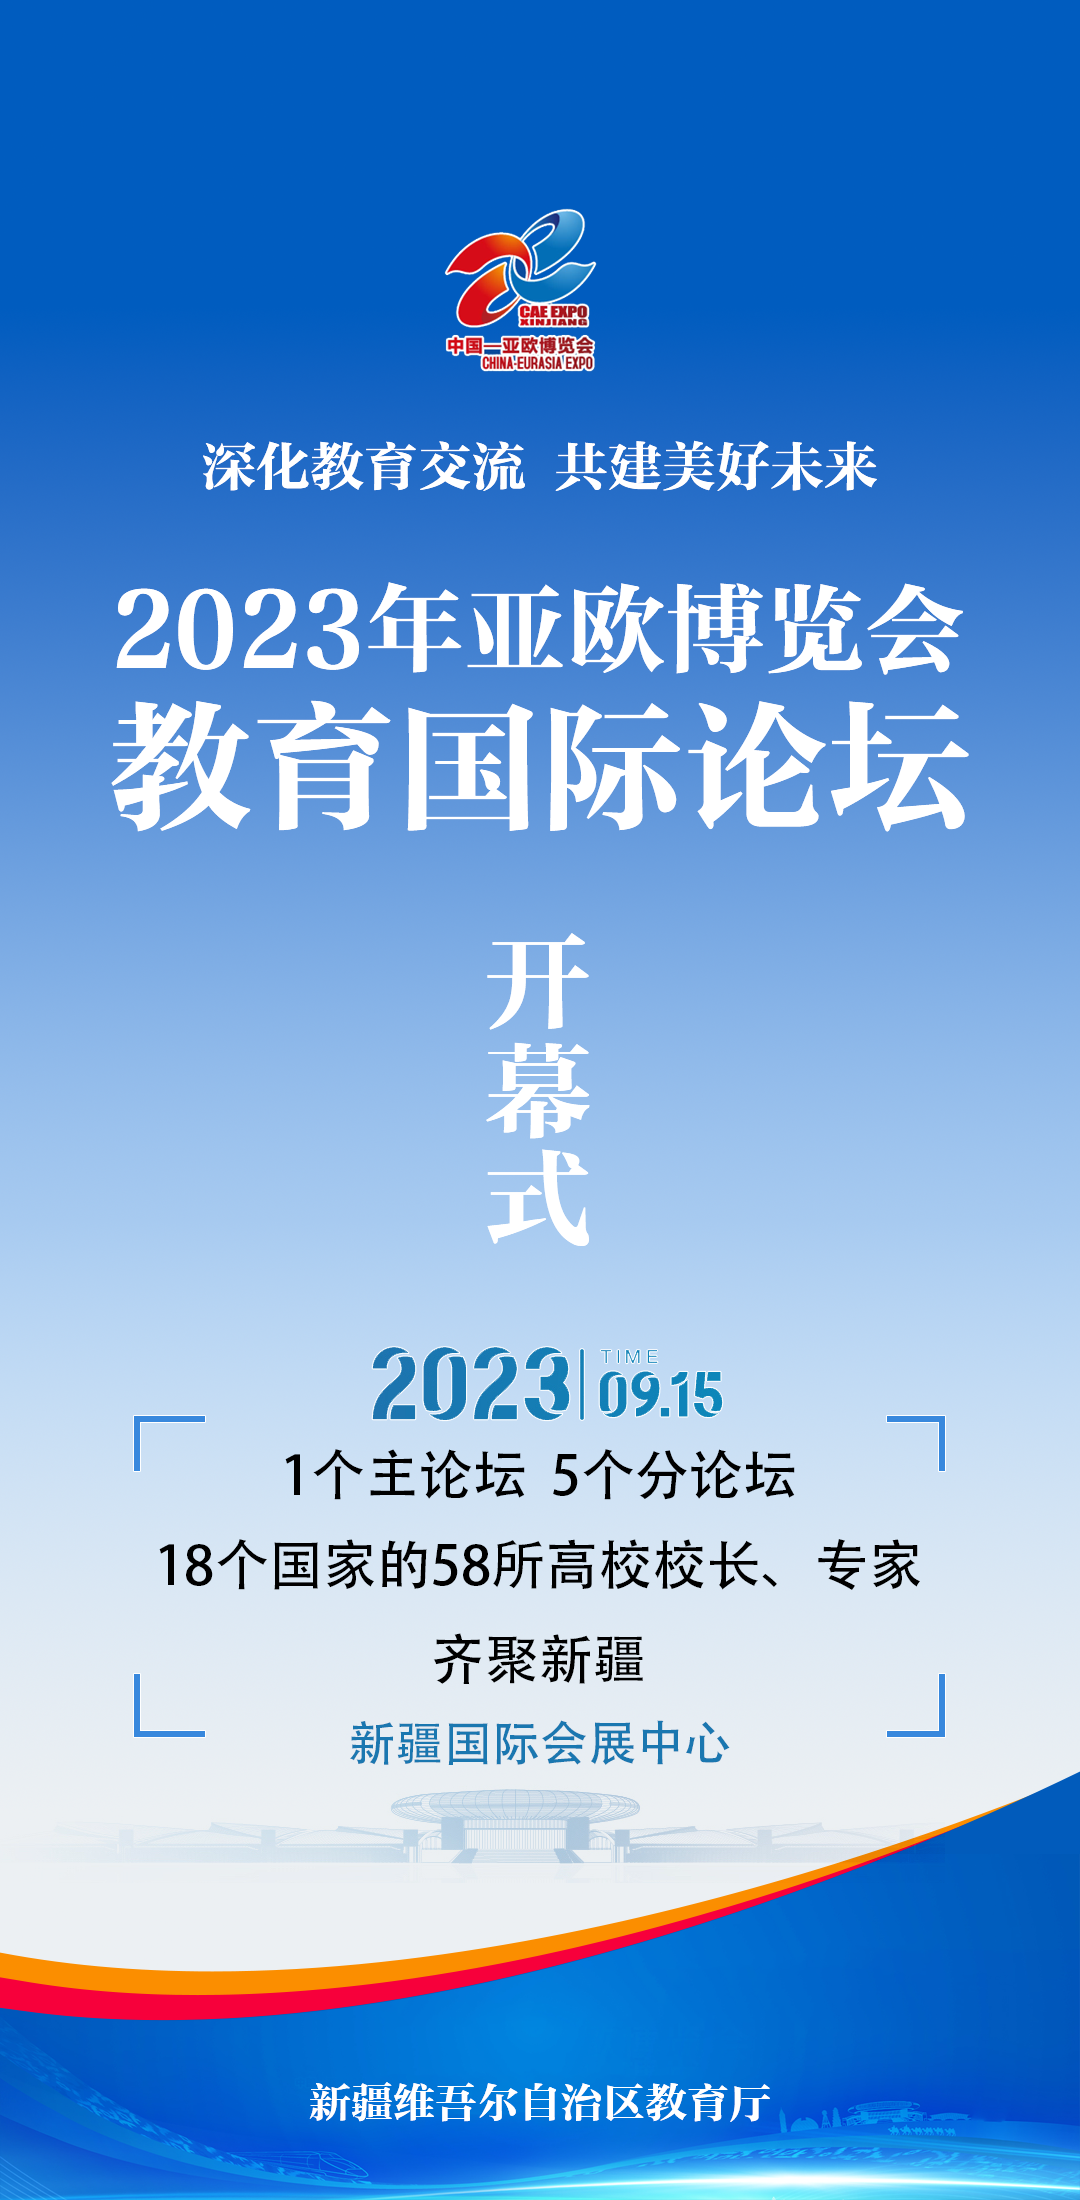 2023亚欧博览会·教育国际论坛9月15日开幕